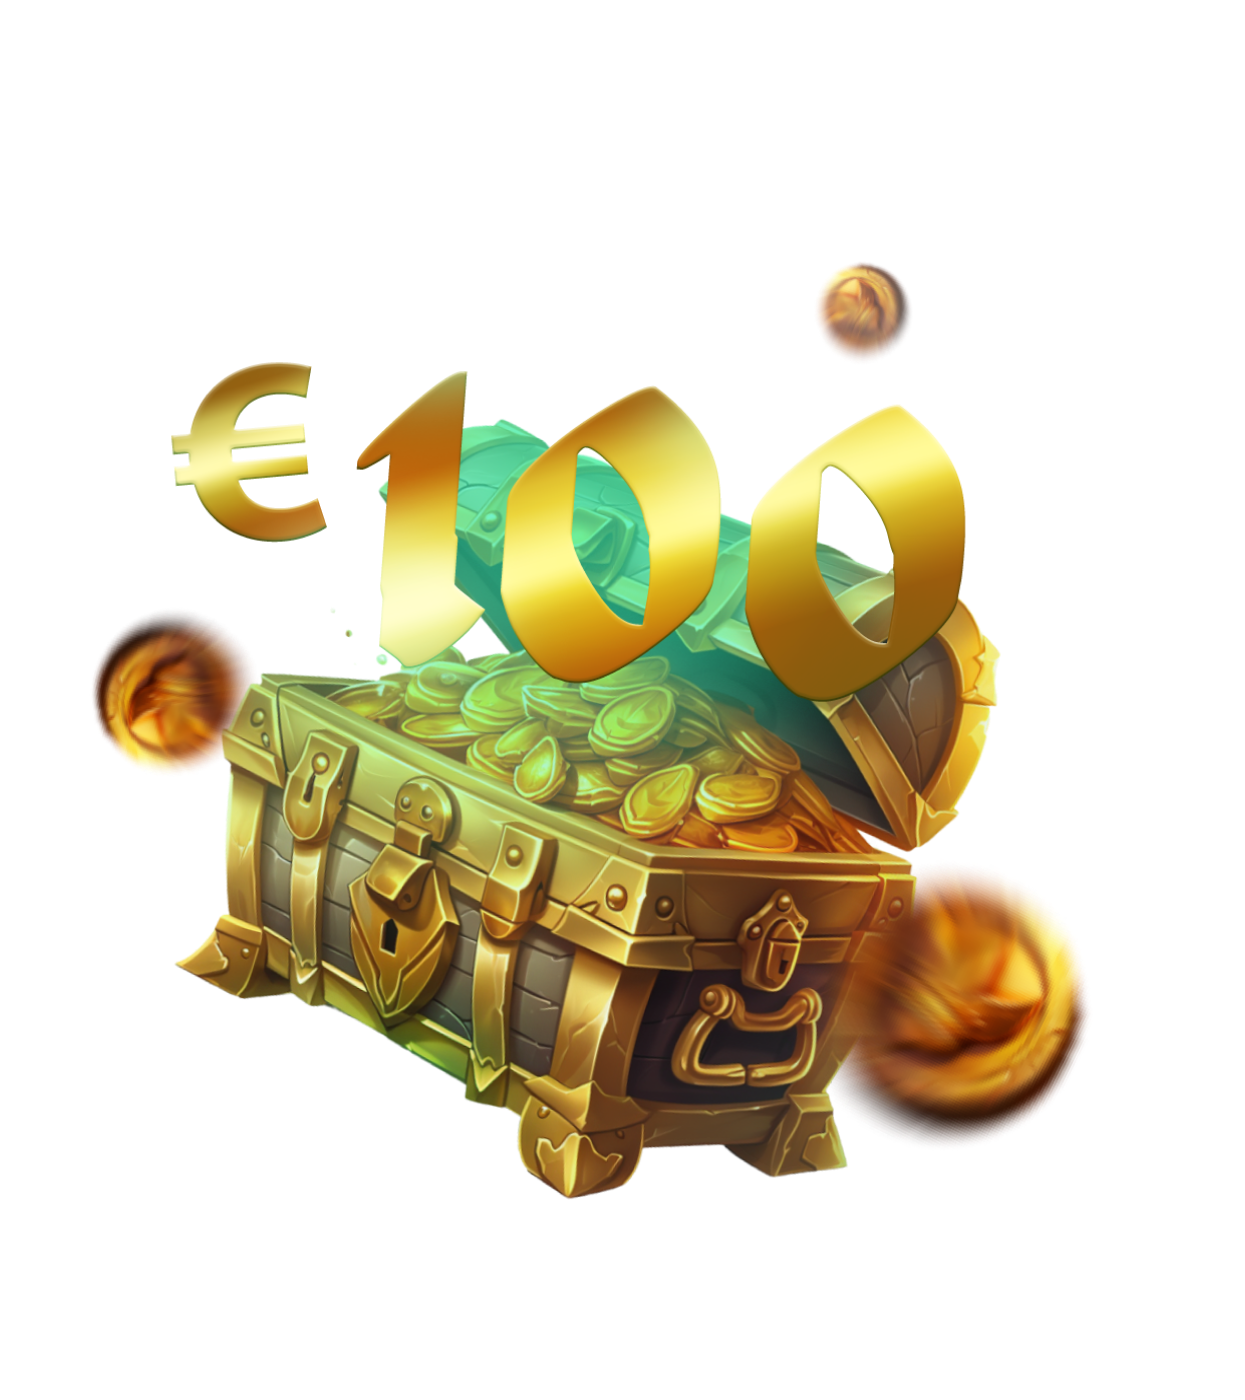 Bônus de 100 euros